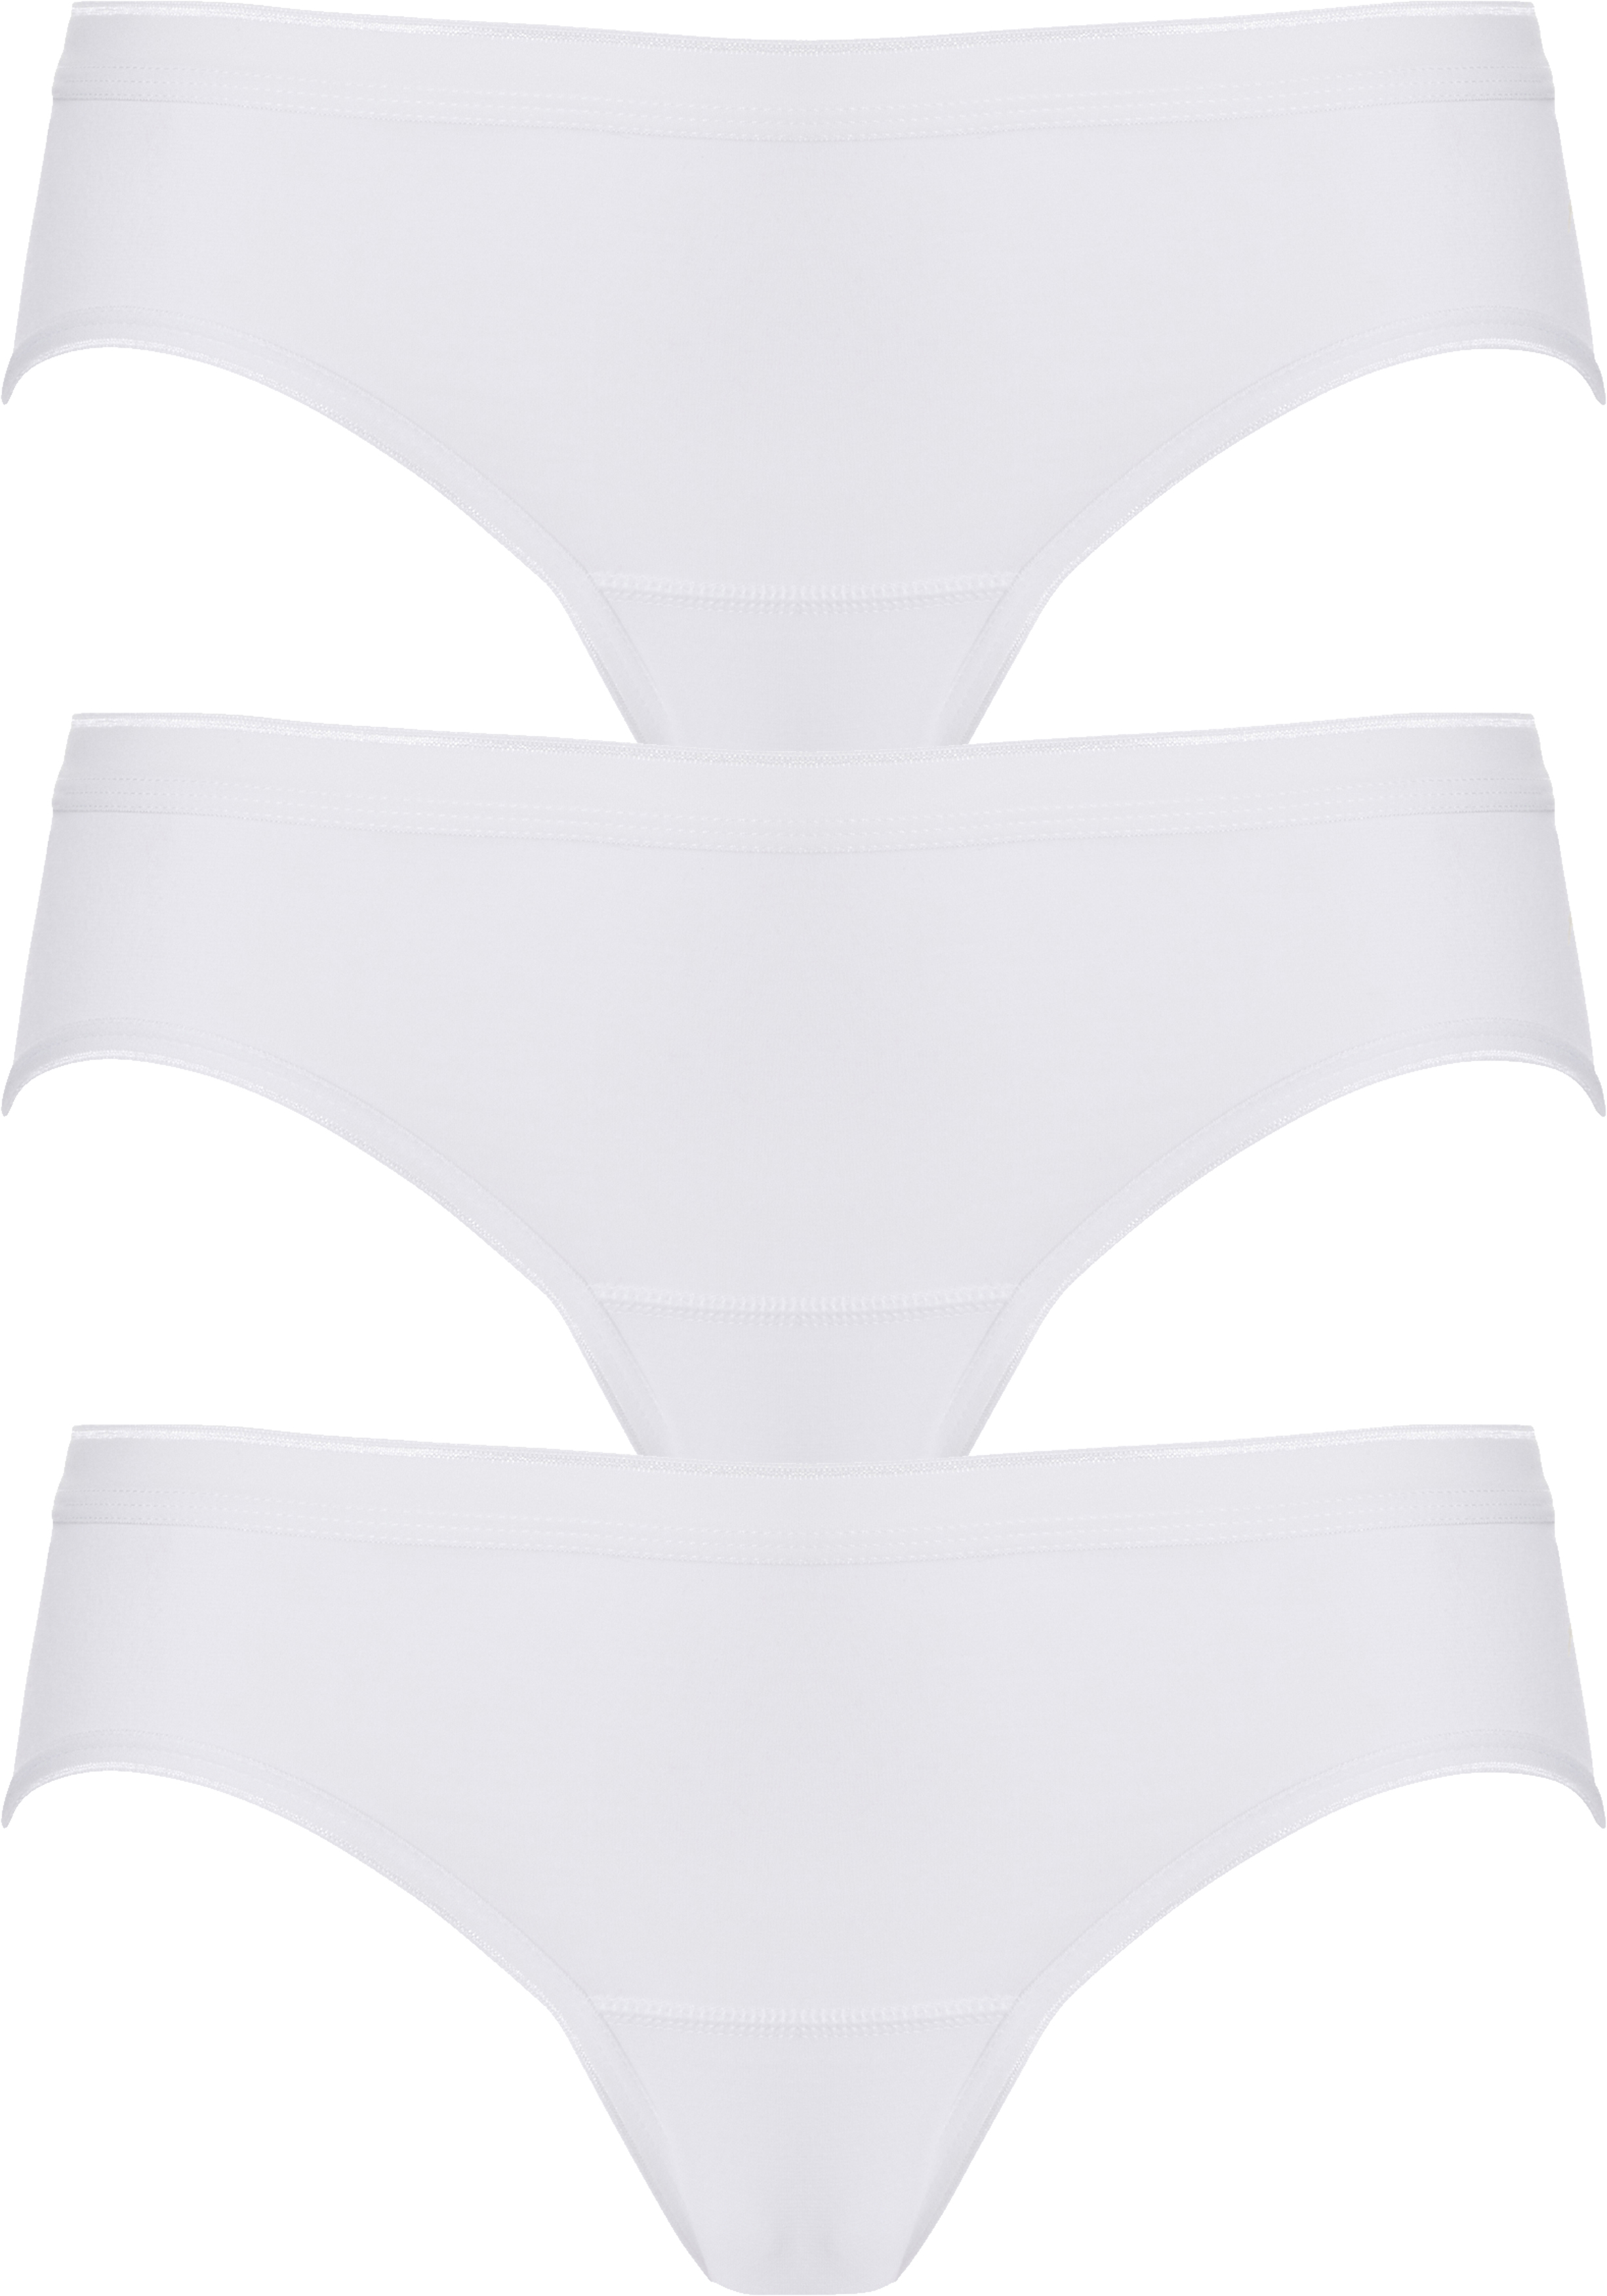 ten Cate  Basic women bikini slips (3-pack), dames slips lage taille, wit